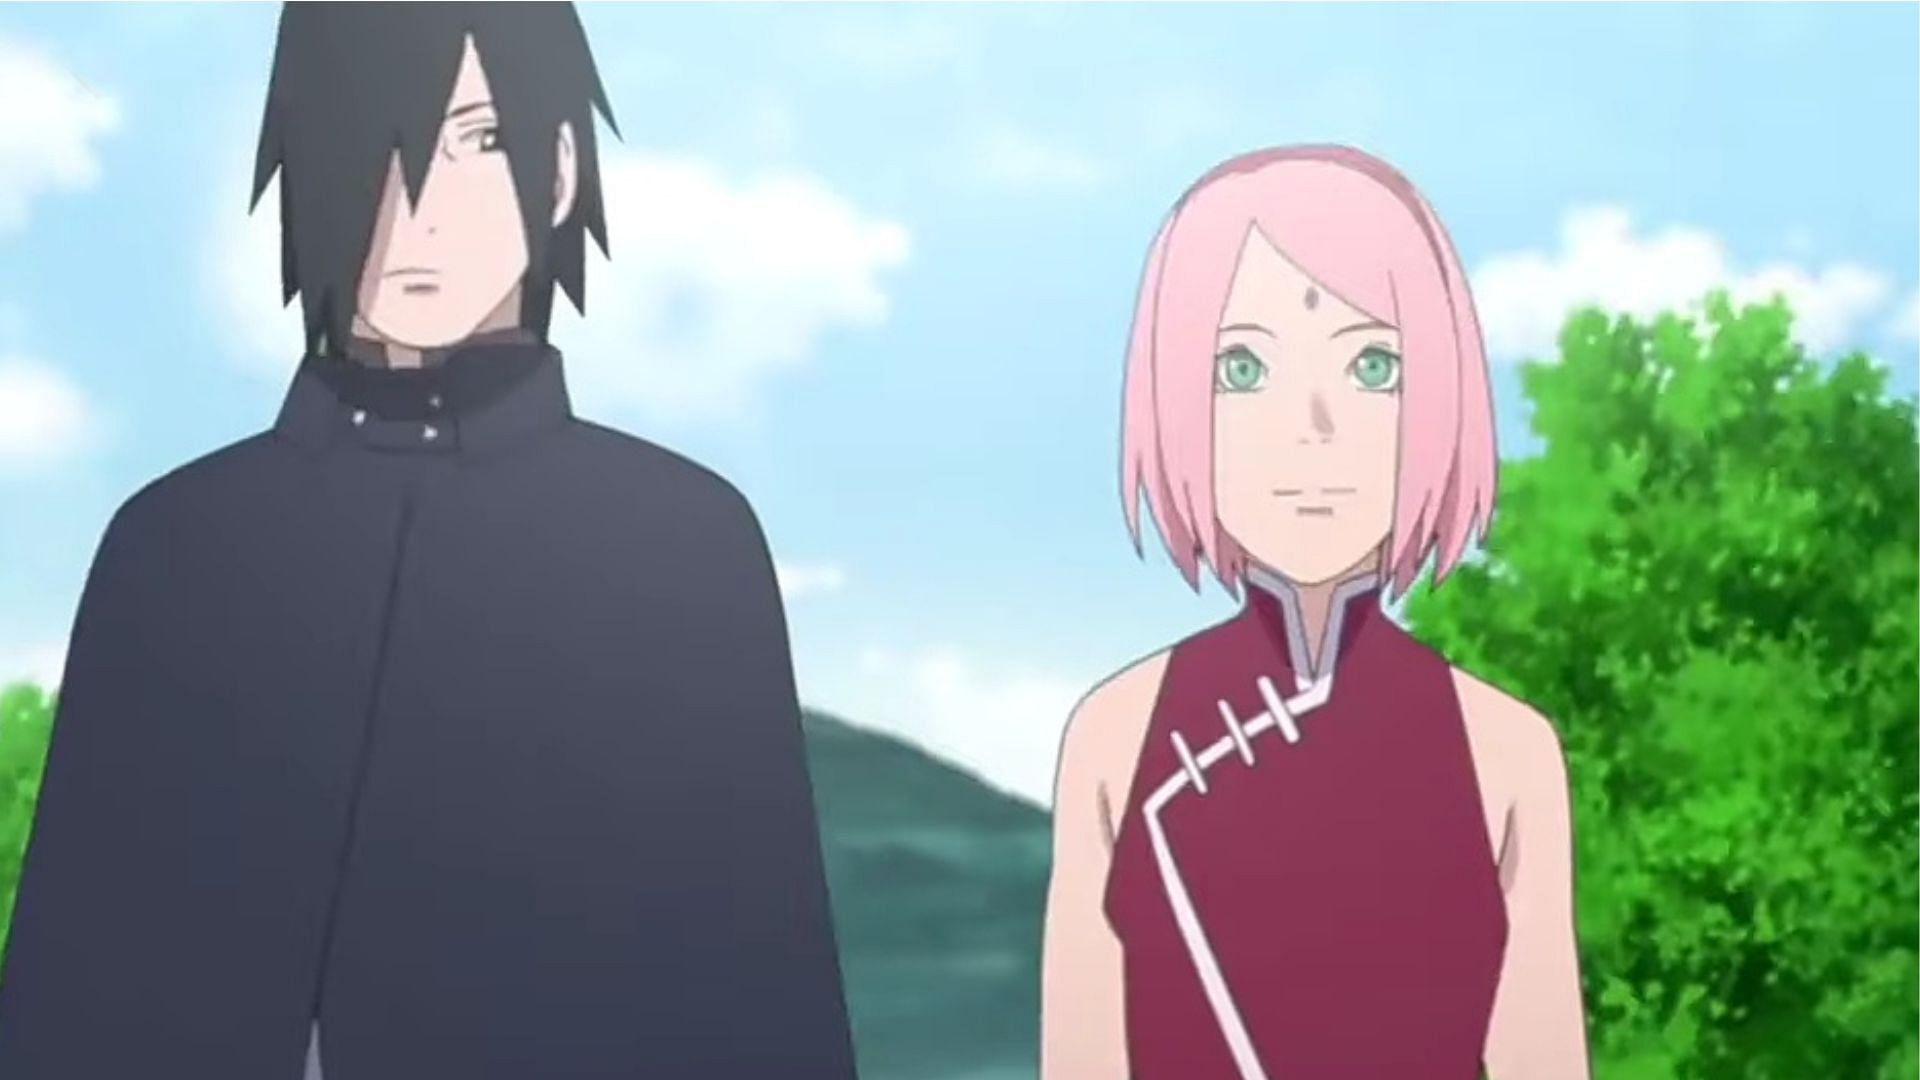 Sasuke and Sakura (image via Pierrot)